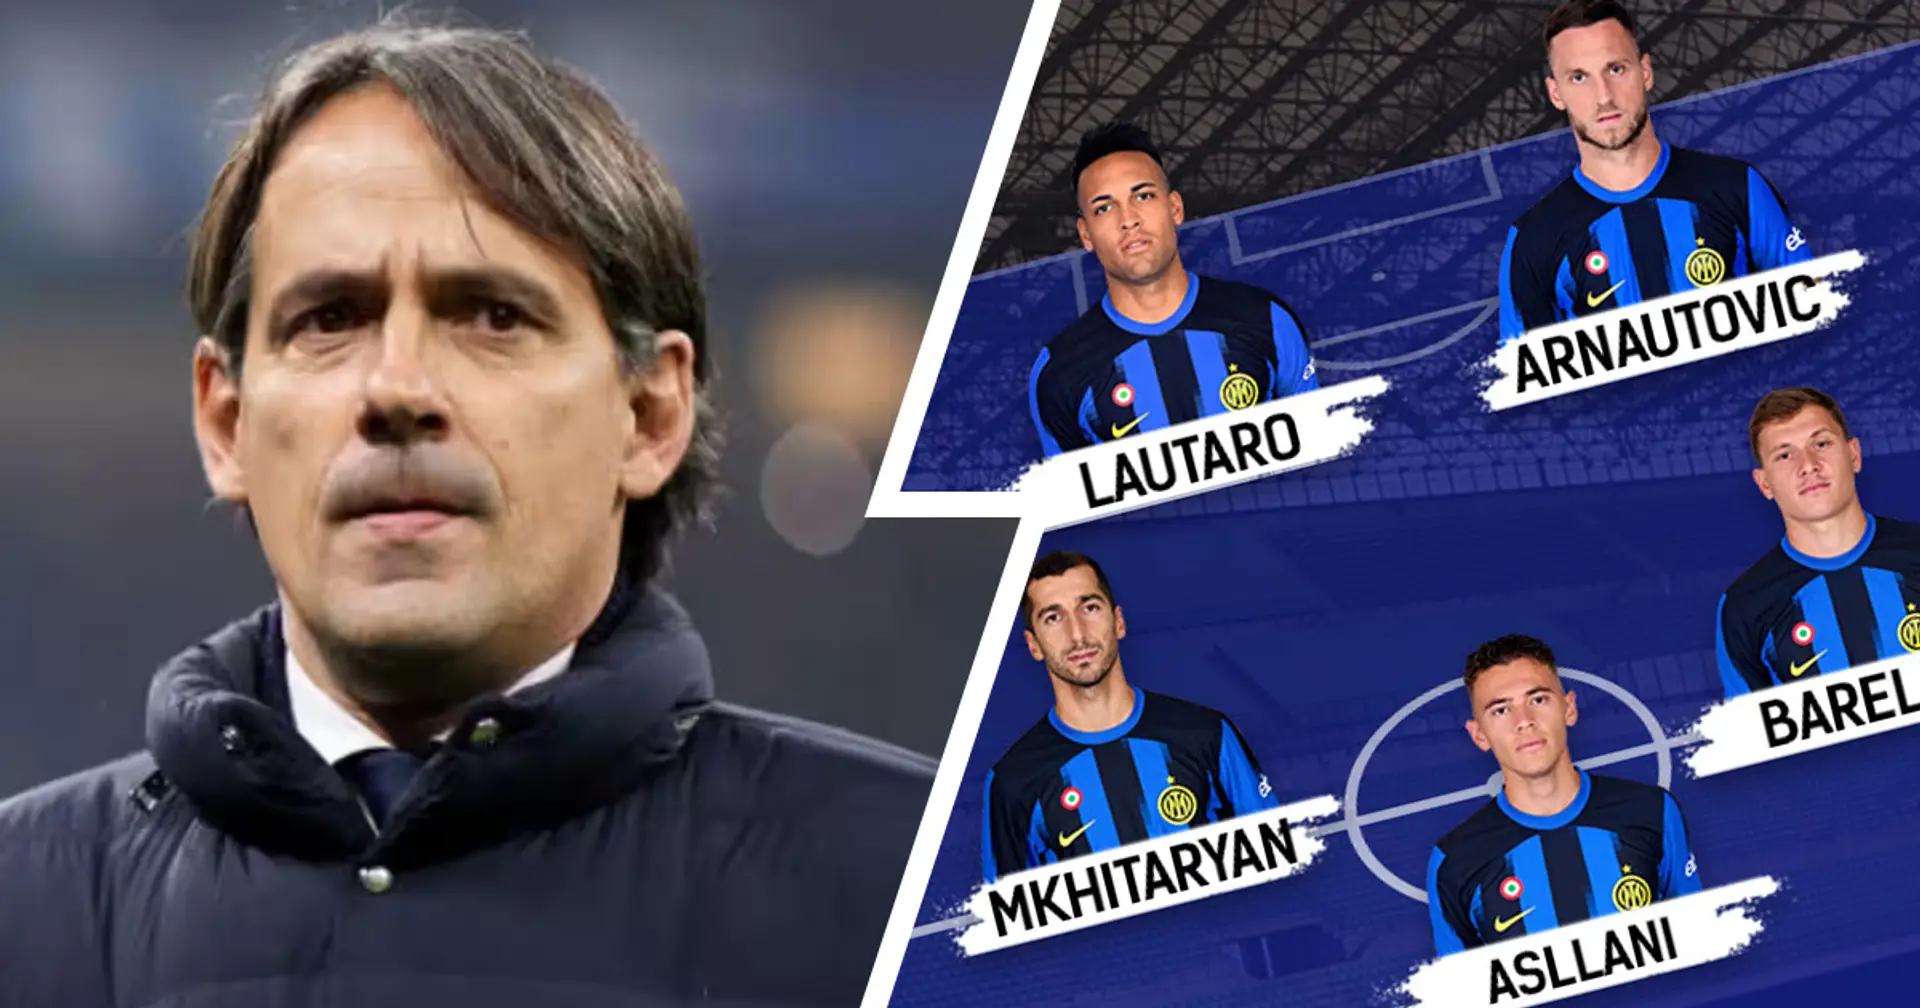 Torna Arnautovic dal 1', e non solo: Inter vs Atalanta, probabili formazioni e ultime notizie